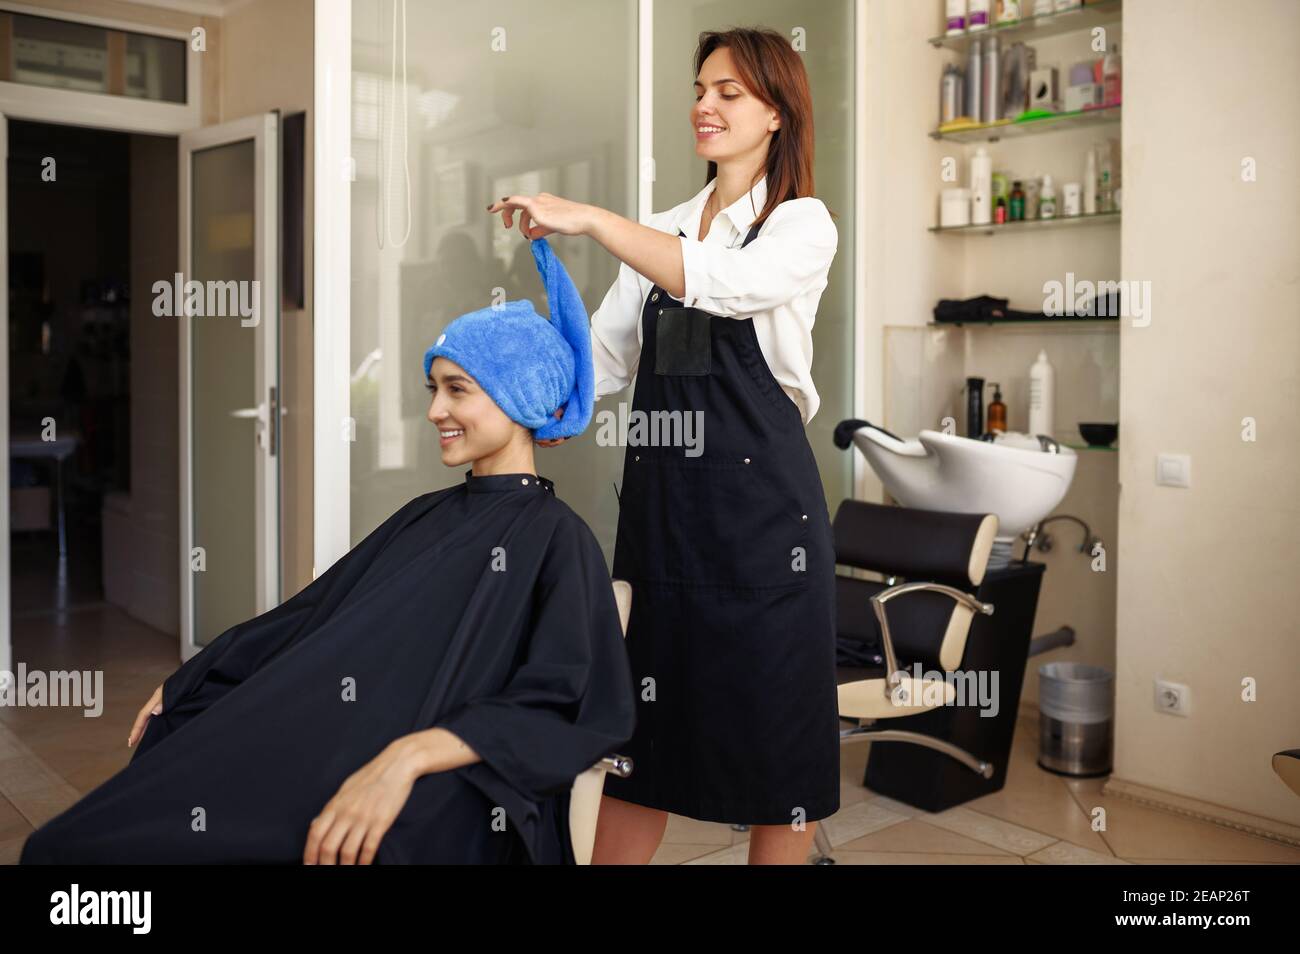 Le coiffeur met une serviette sur les cheveux de la femme, vue de face Banque D'Images